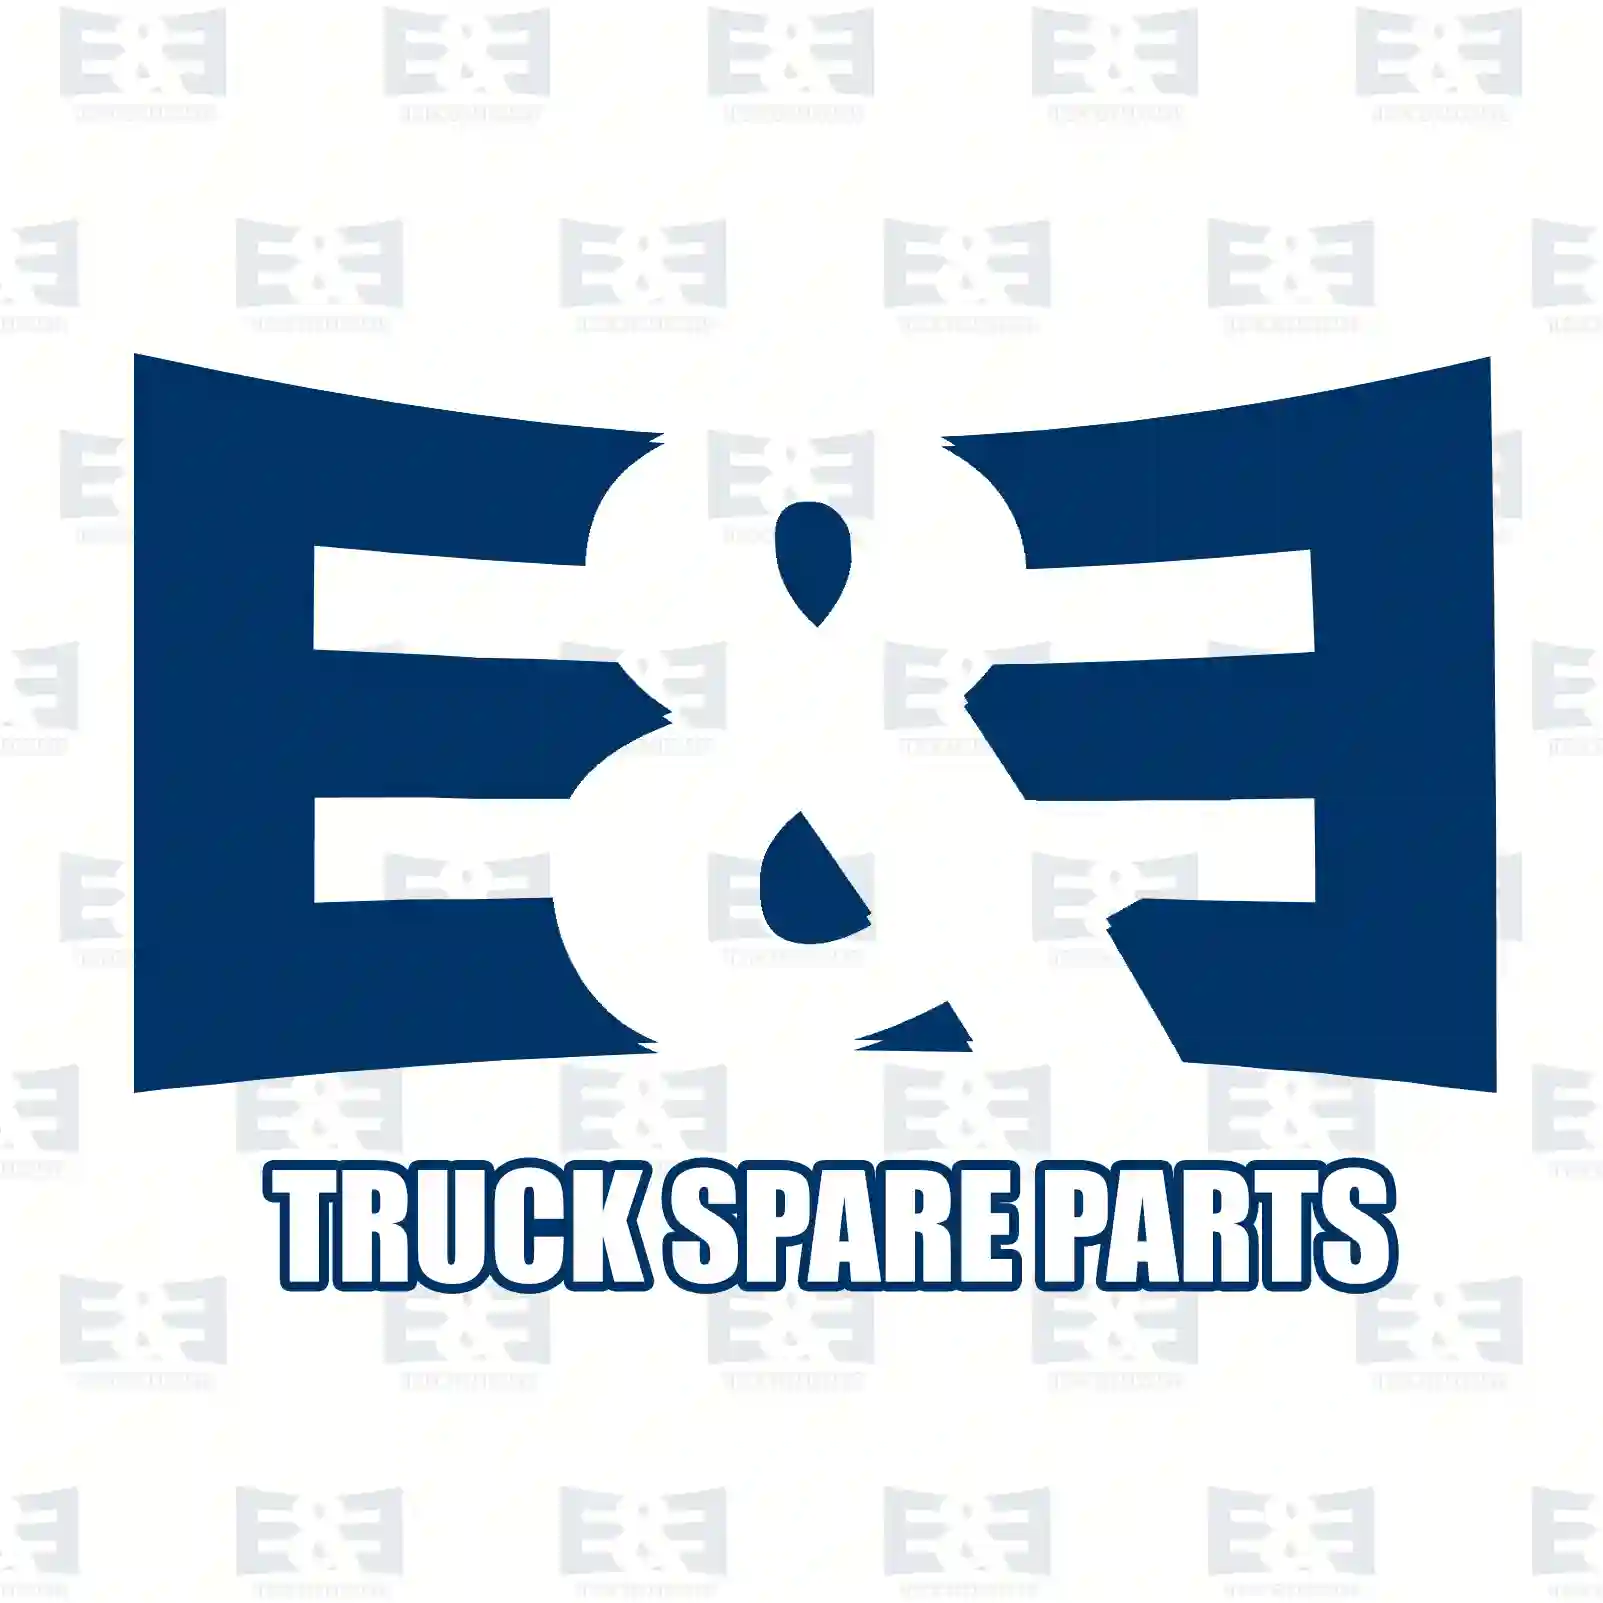 Cabin shock absorber, 2E2276463, 85417226017, 85417226017, , ||  2E2276463 E&E Truck Spare Parts | Truck Spare Parts, Auotomotive Spare Parts Cabin shock absorber, 2E2276463, 85417226017, 85417226017, , ||  2E2276463 E&E Truck Spare Parts | Truck Spare Parts, Auotomotive Spare Parts